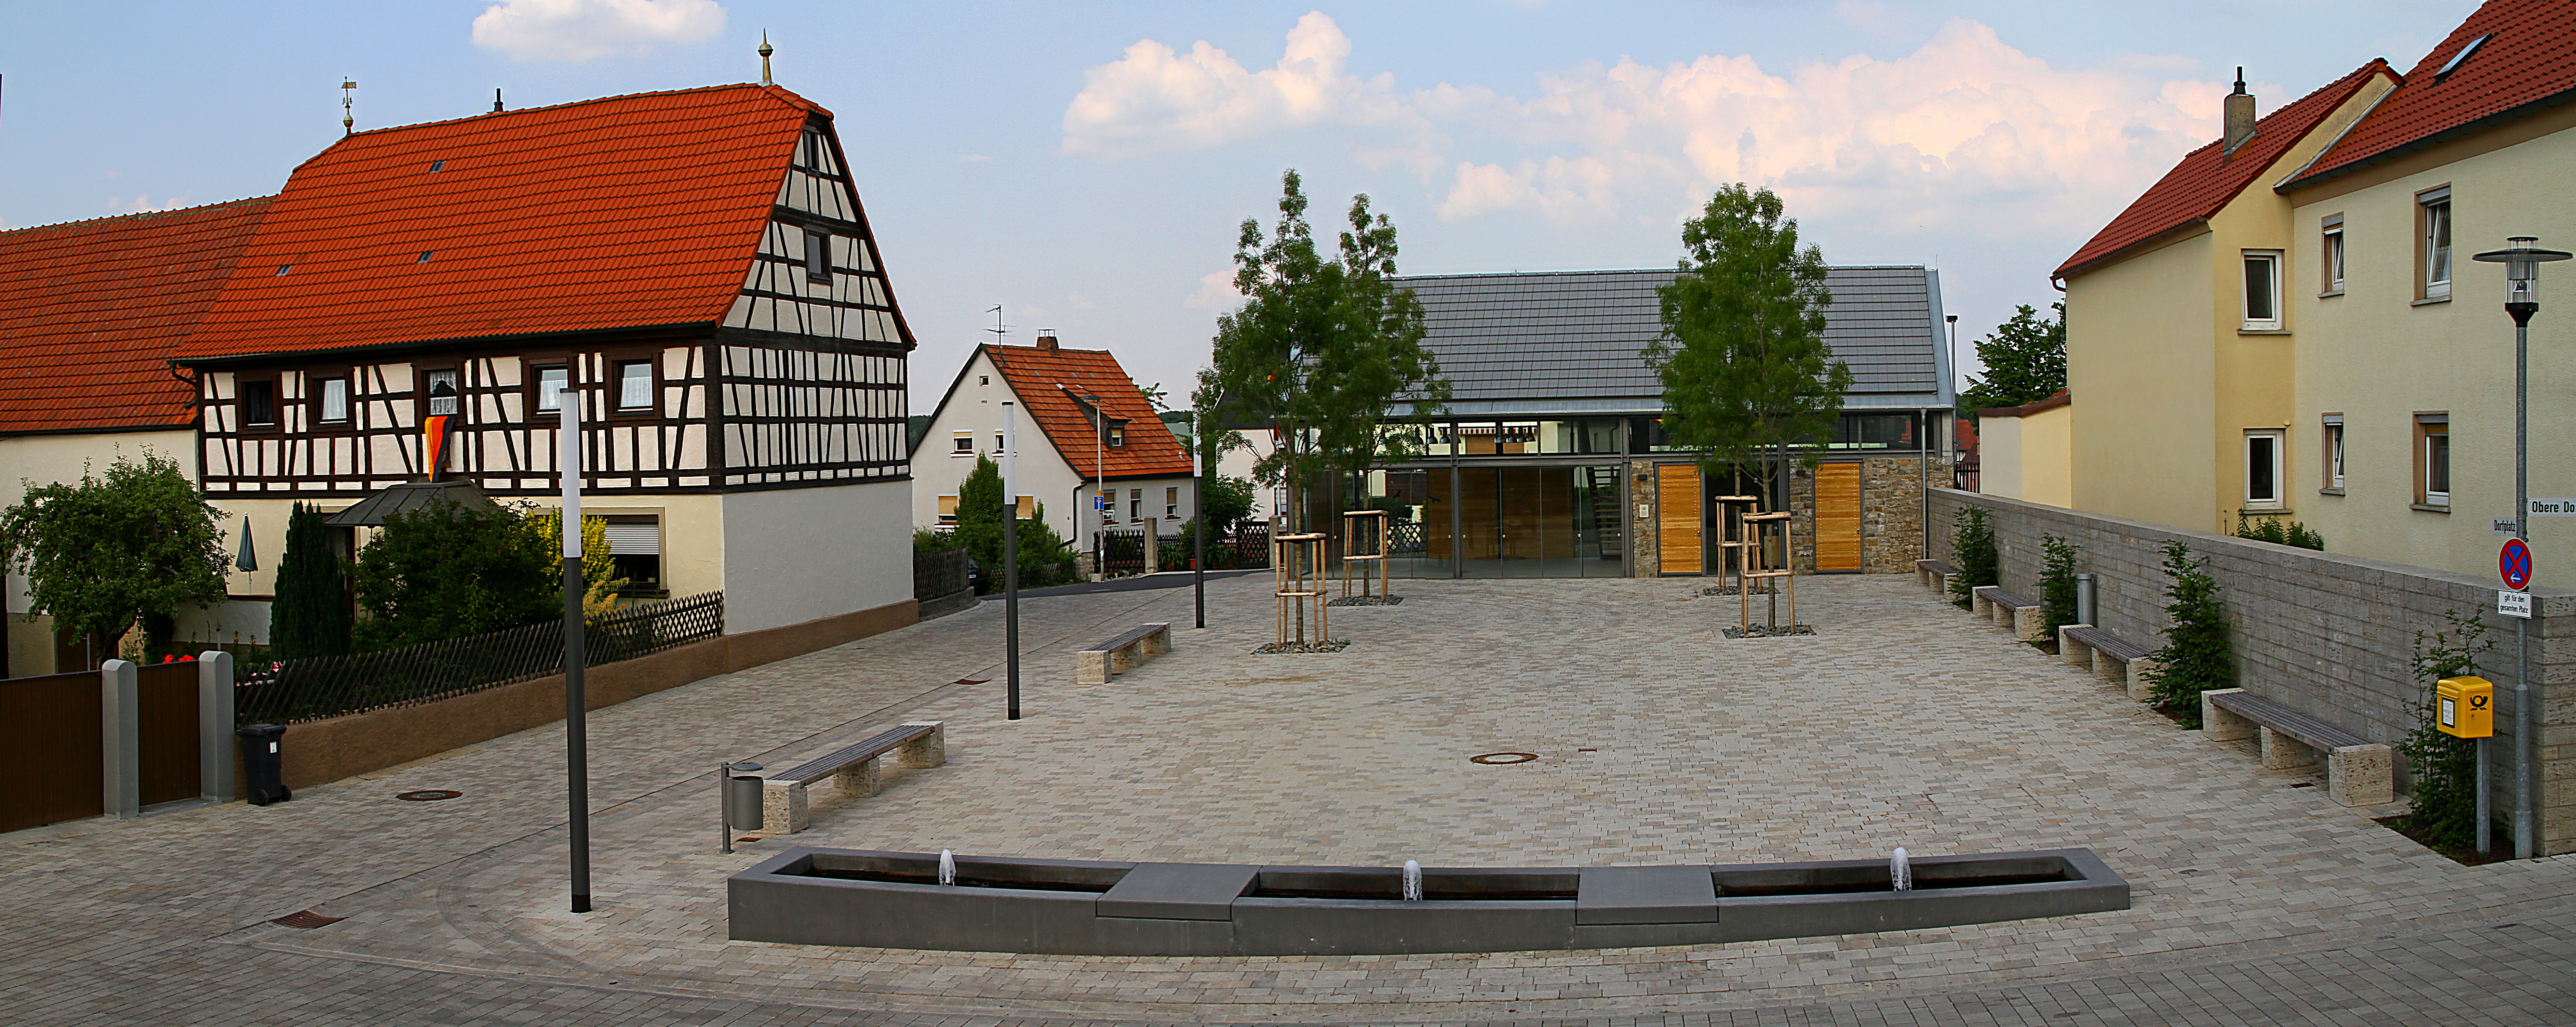 Dorfhaus und Dorfplatz